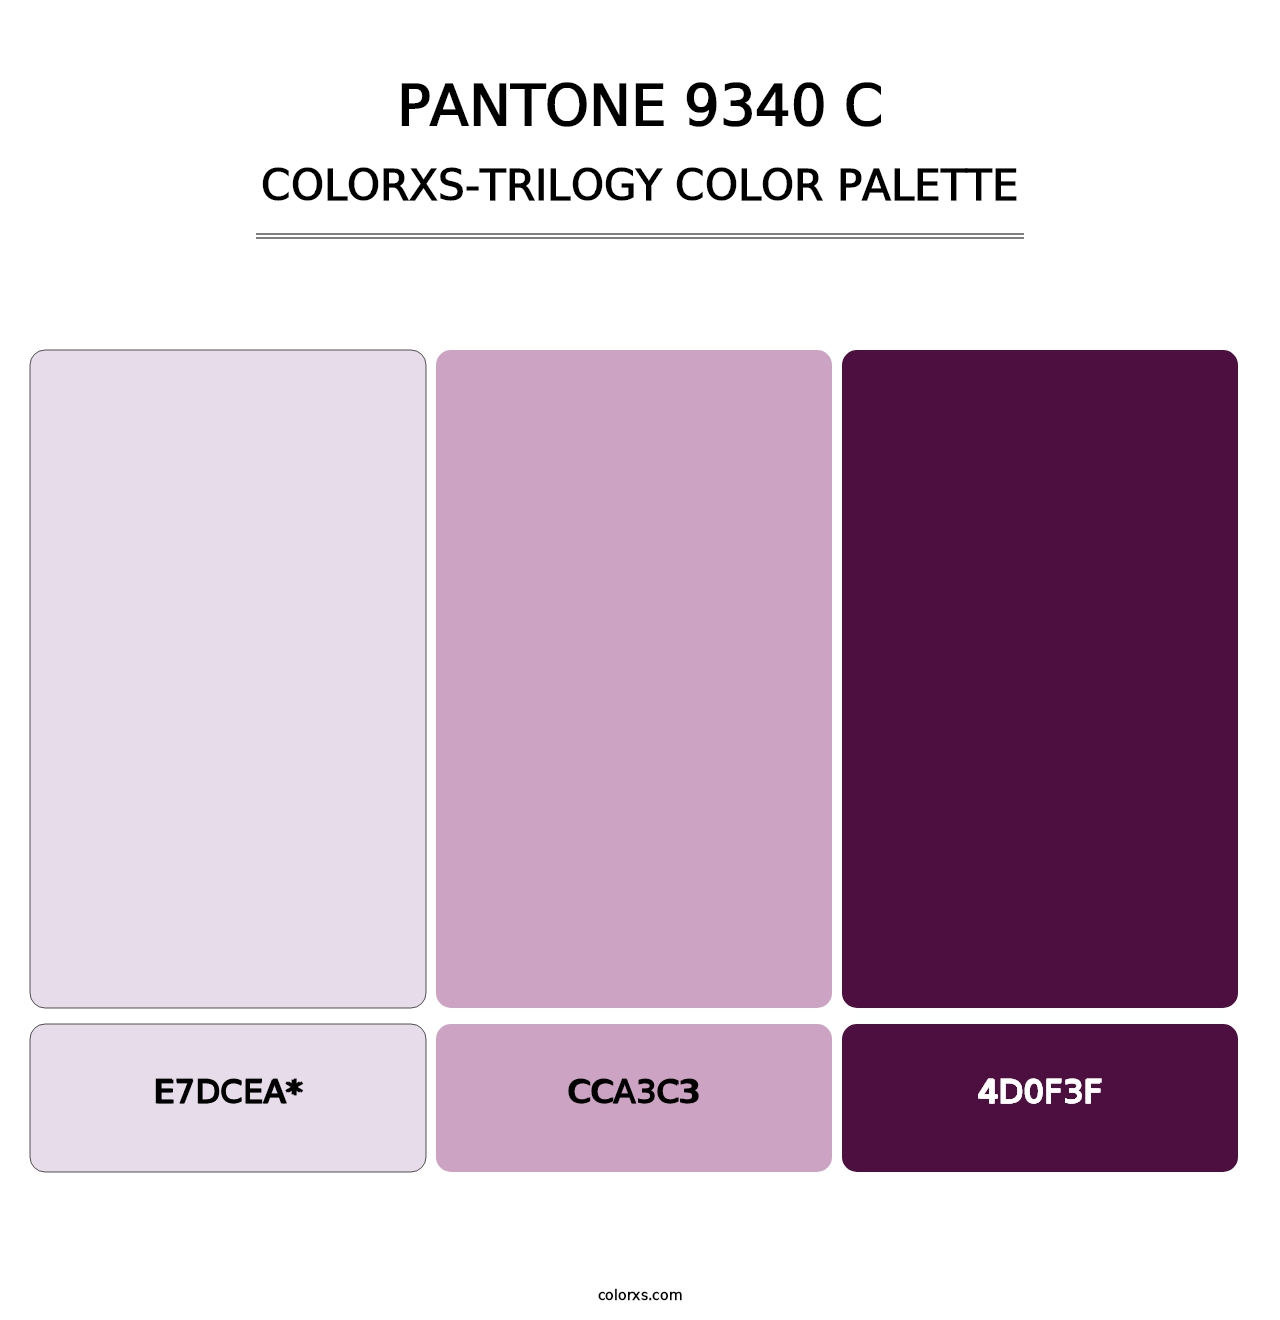 PANTONE 9340 C - Colorxs Trilogy Palette